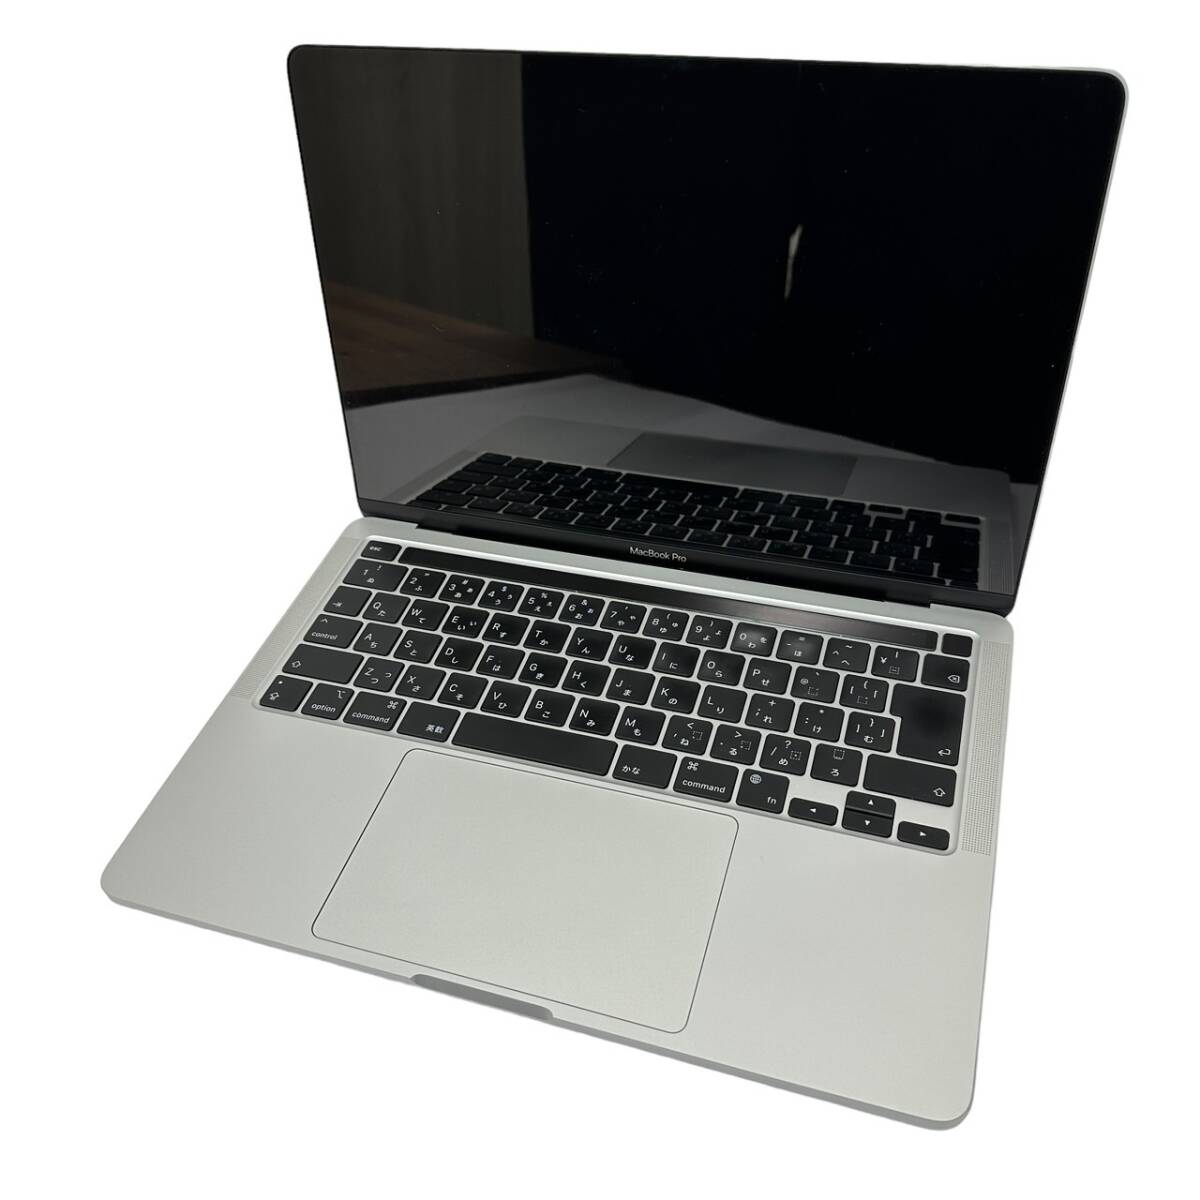 【1円スタート】 MacBook Pro (13インチ, M1) 8コア / メモリ 8GB / SSD 256GB M1チップ搭載 Retinaディスプレイ A2338 タッチバーの画像1